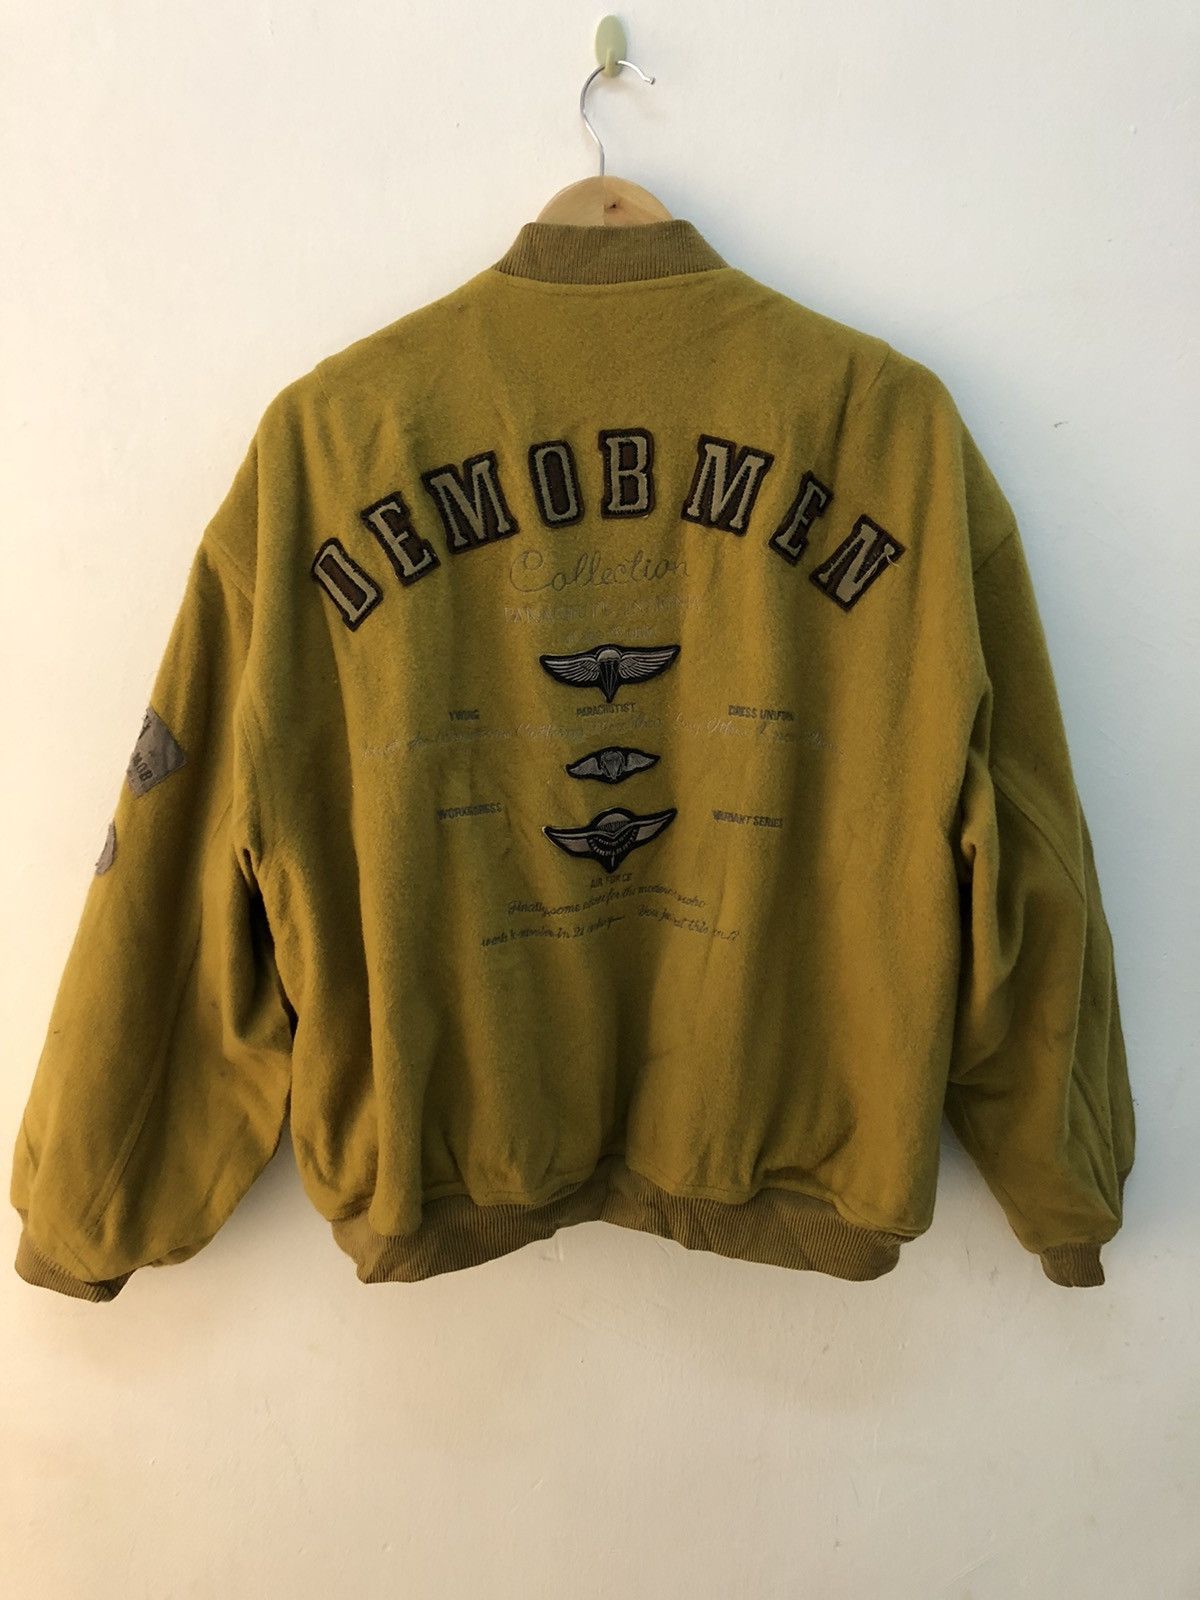 Vintage VINTAGE DEMOB MEN AIR FORCE Varsity wool jacket | Grailed